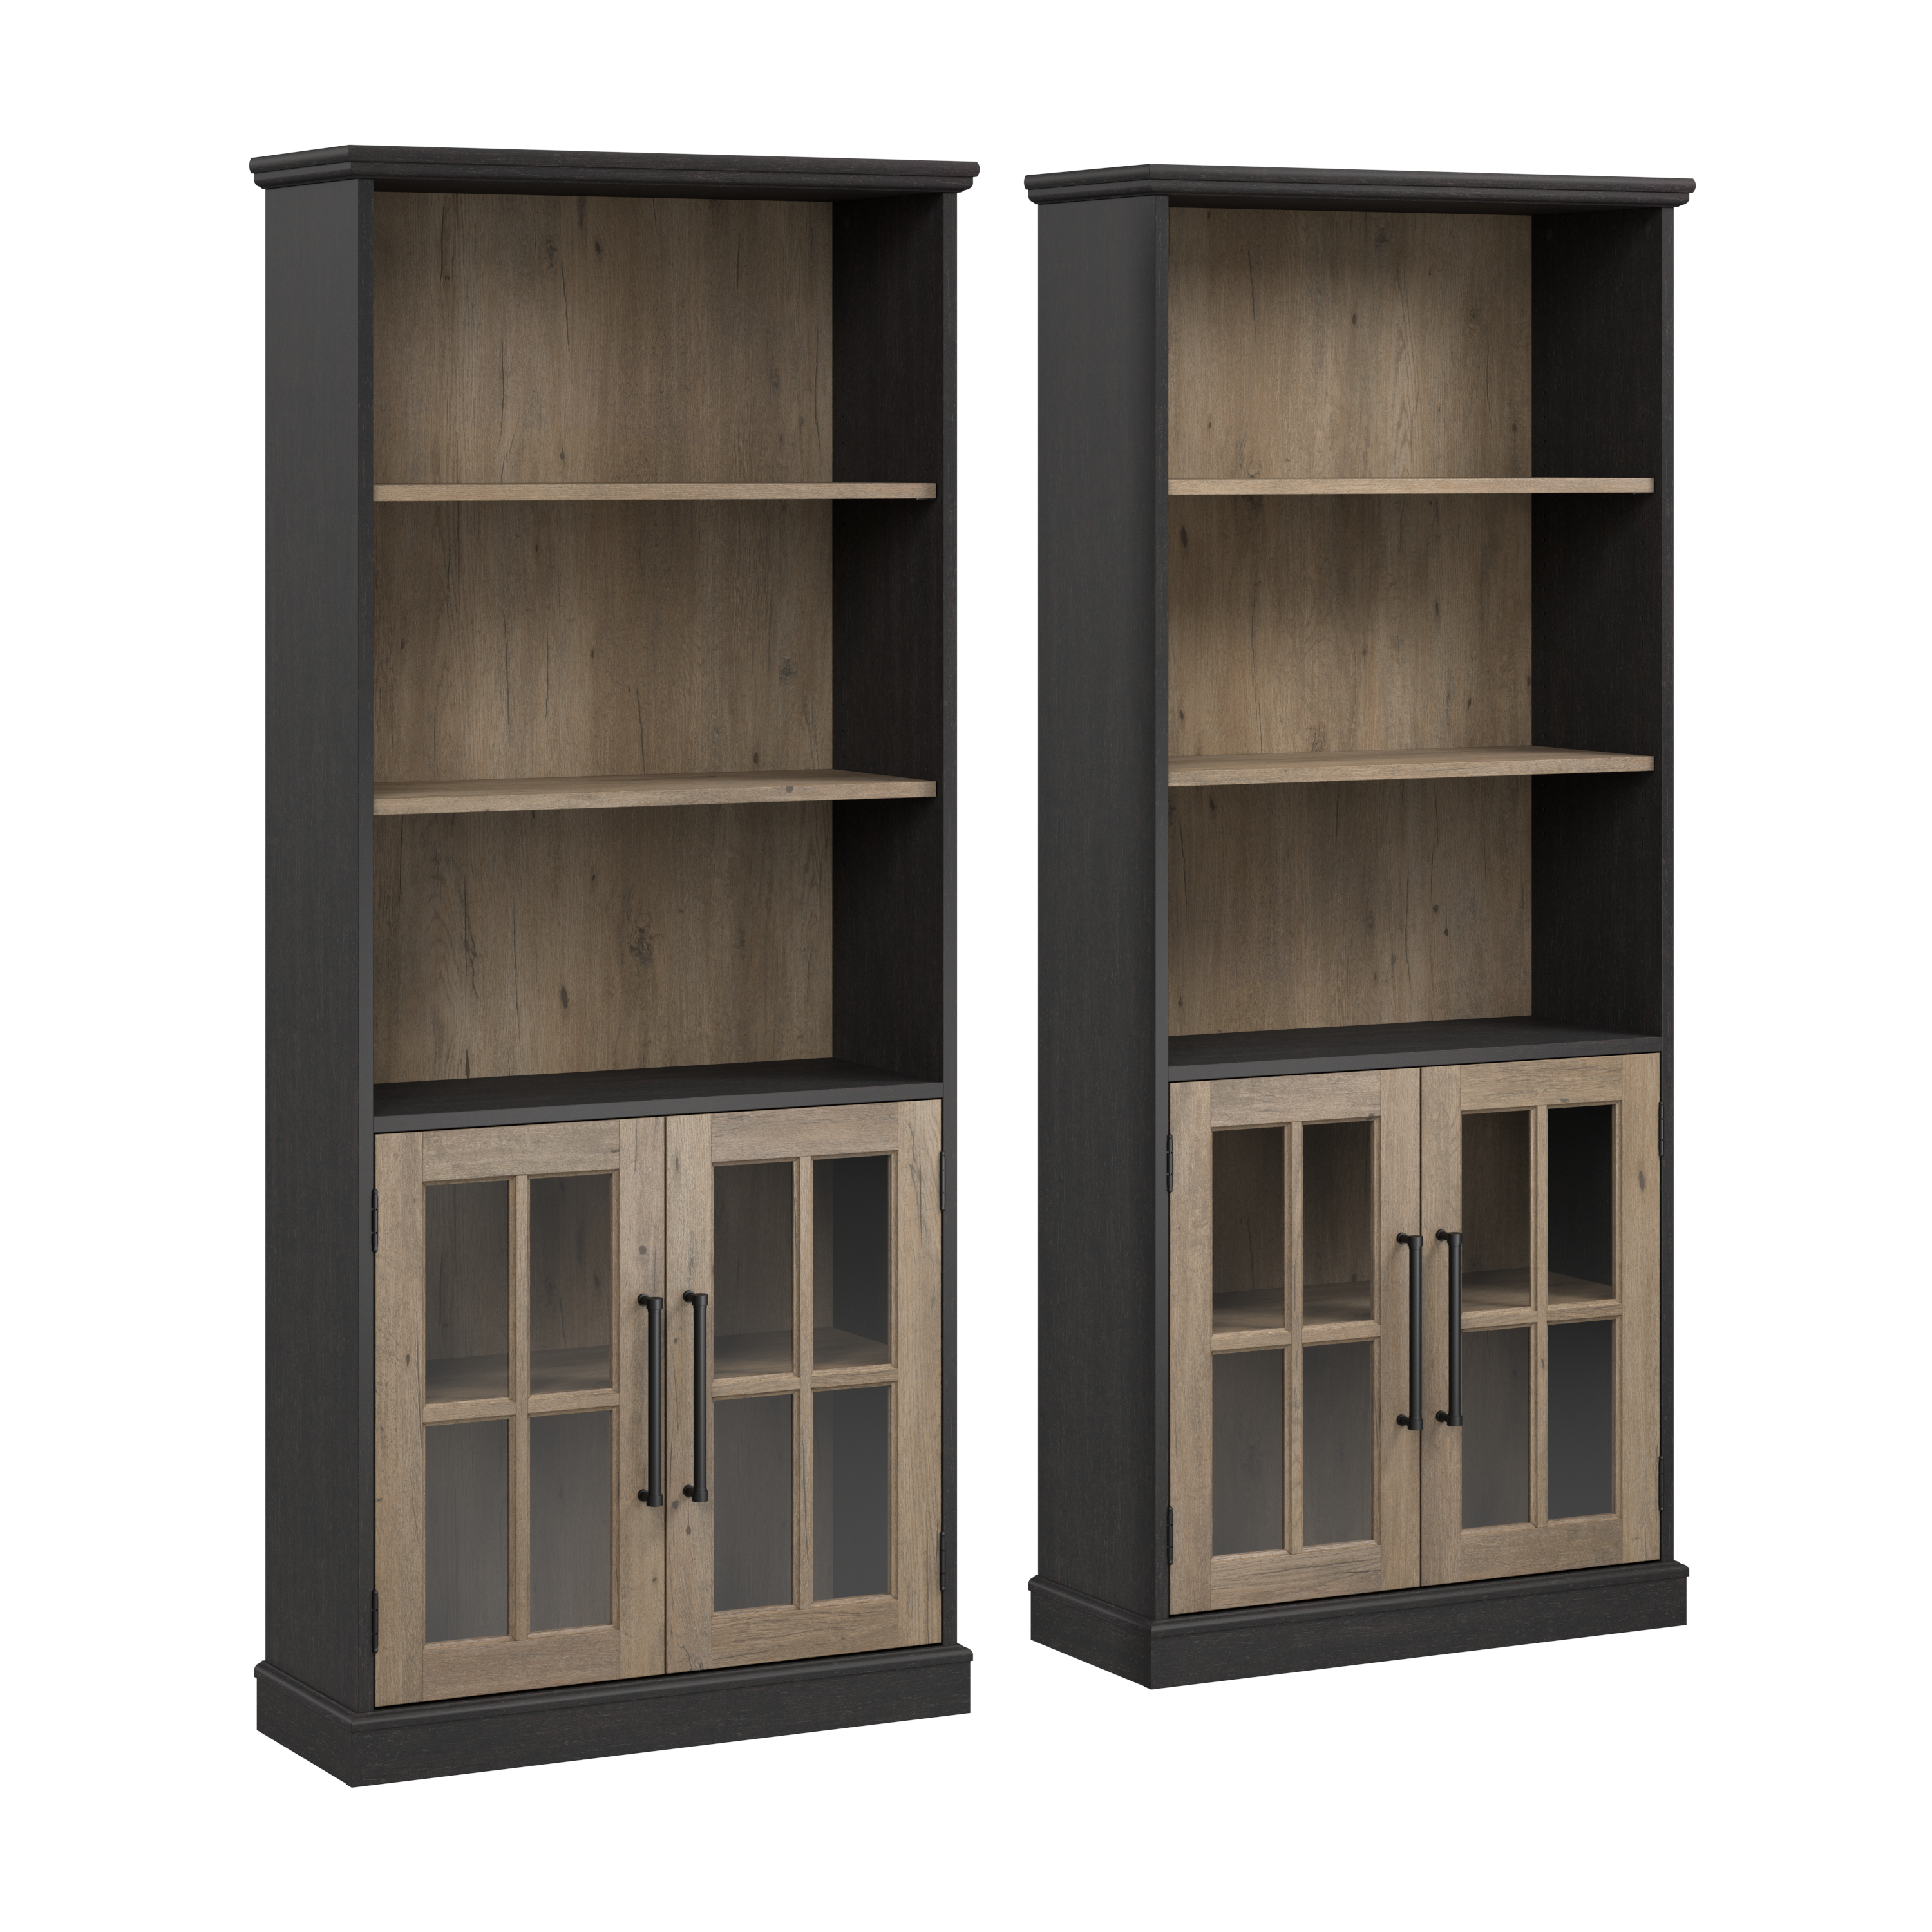 Shop Bush Furniture Westbrook 5 Shelf Bookcase with Glass Doors - Set of 2 02 WBK001V2R #color_vintage black/restored tan hickory